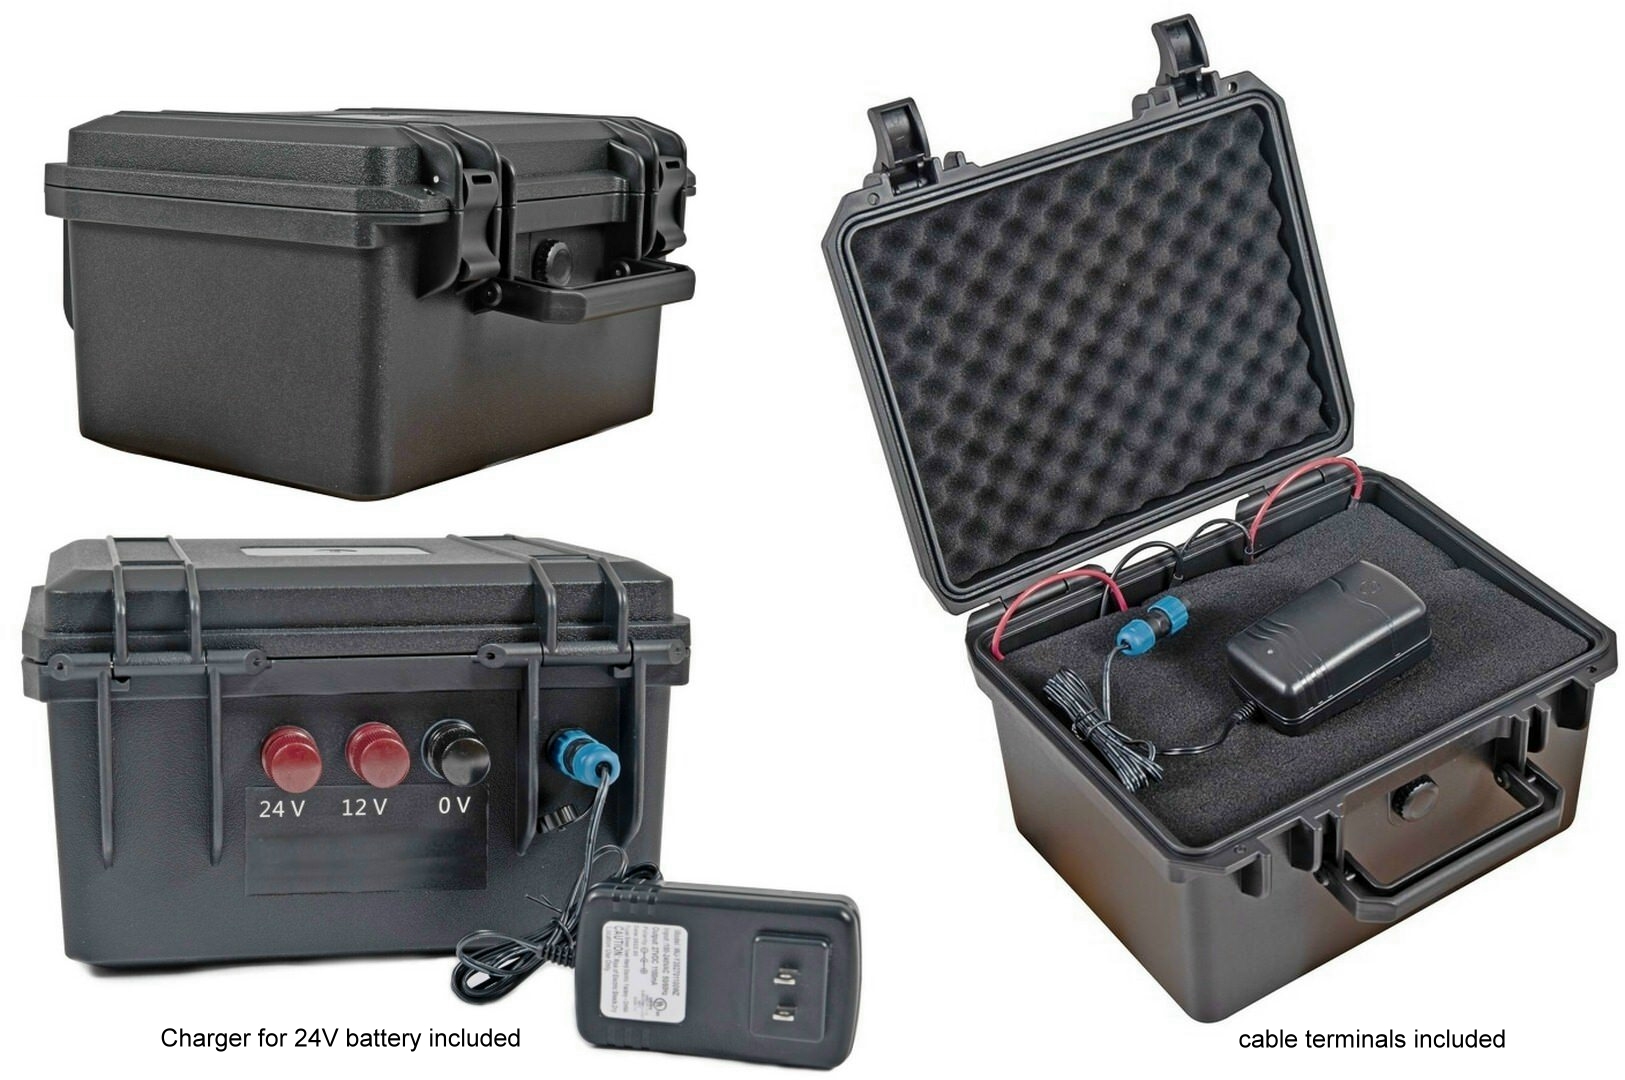 Battery Box for 12V or 24V batteries.